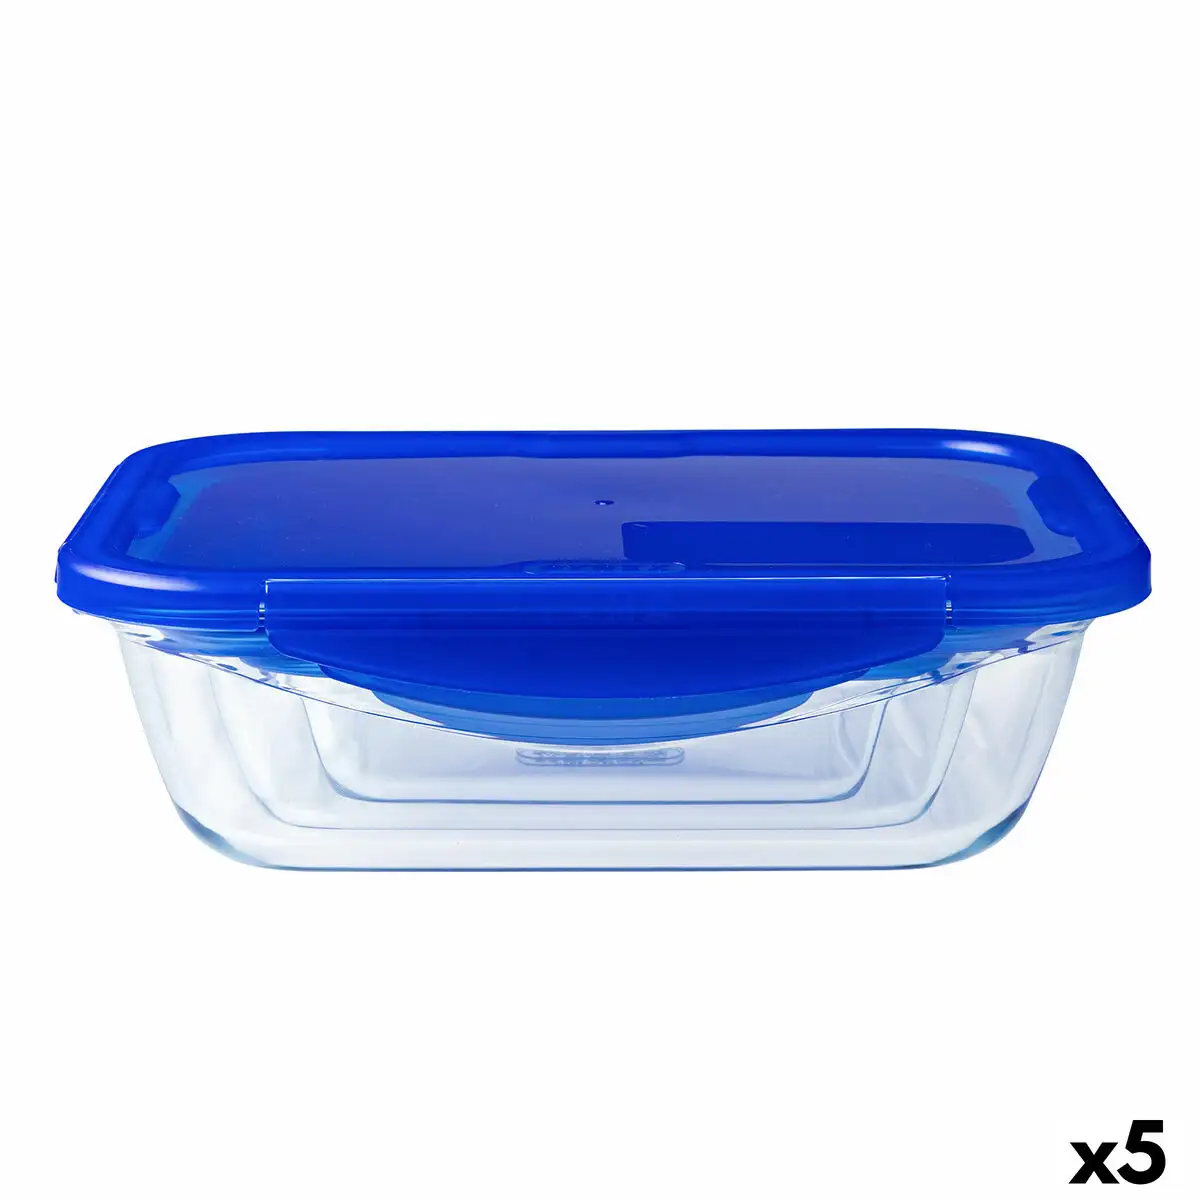 Lunch box herme tique pyrex cook go bleu 1 7 l 24 x 18 cm verre 5 unite s_6394. DIAYTAR SENEGAL - L'Art de Magasiner sans Frontières. Parcourez notre vaste sélection d'articles et trouvez tout ce dont vous avez besoin, du chic à l'authentique, du moderne au traditionnel.